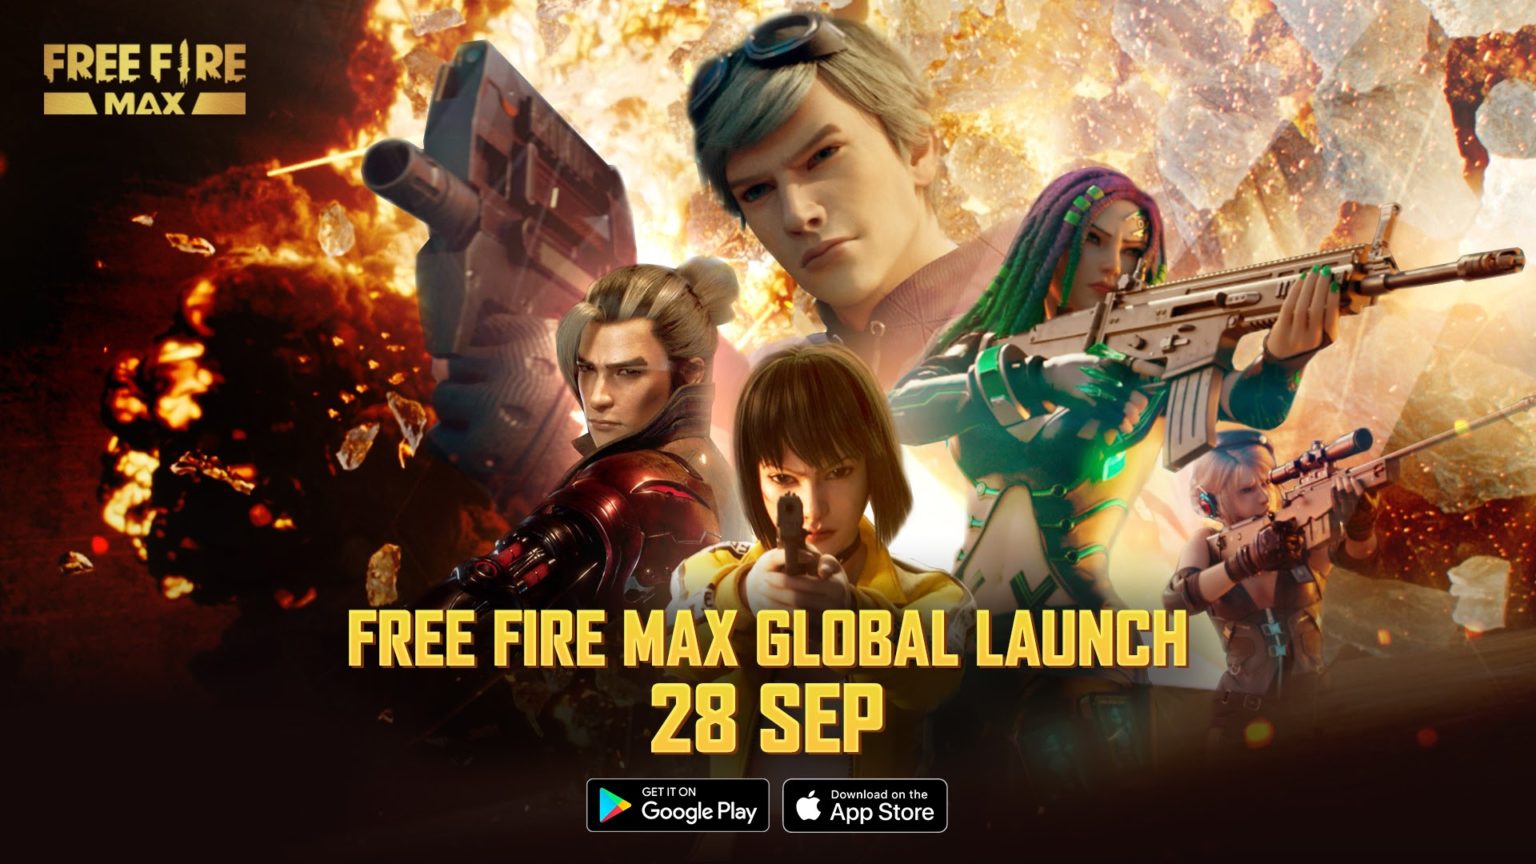 《Free Fire Max》将于 28 月 XNUMX 日发布